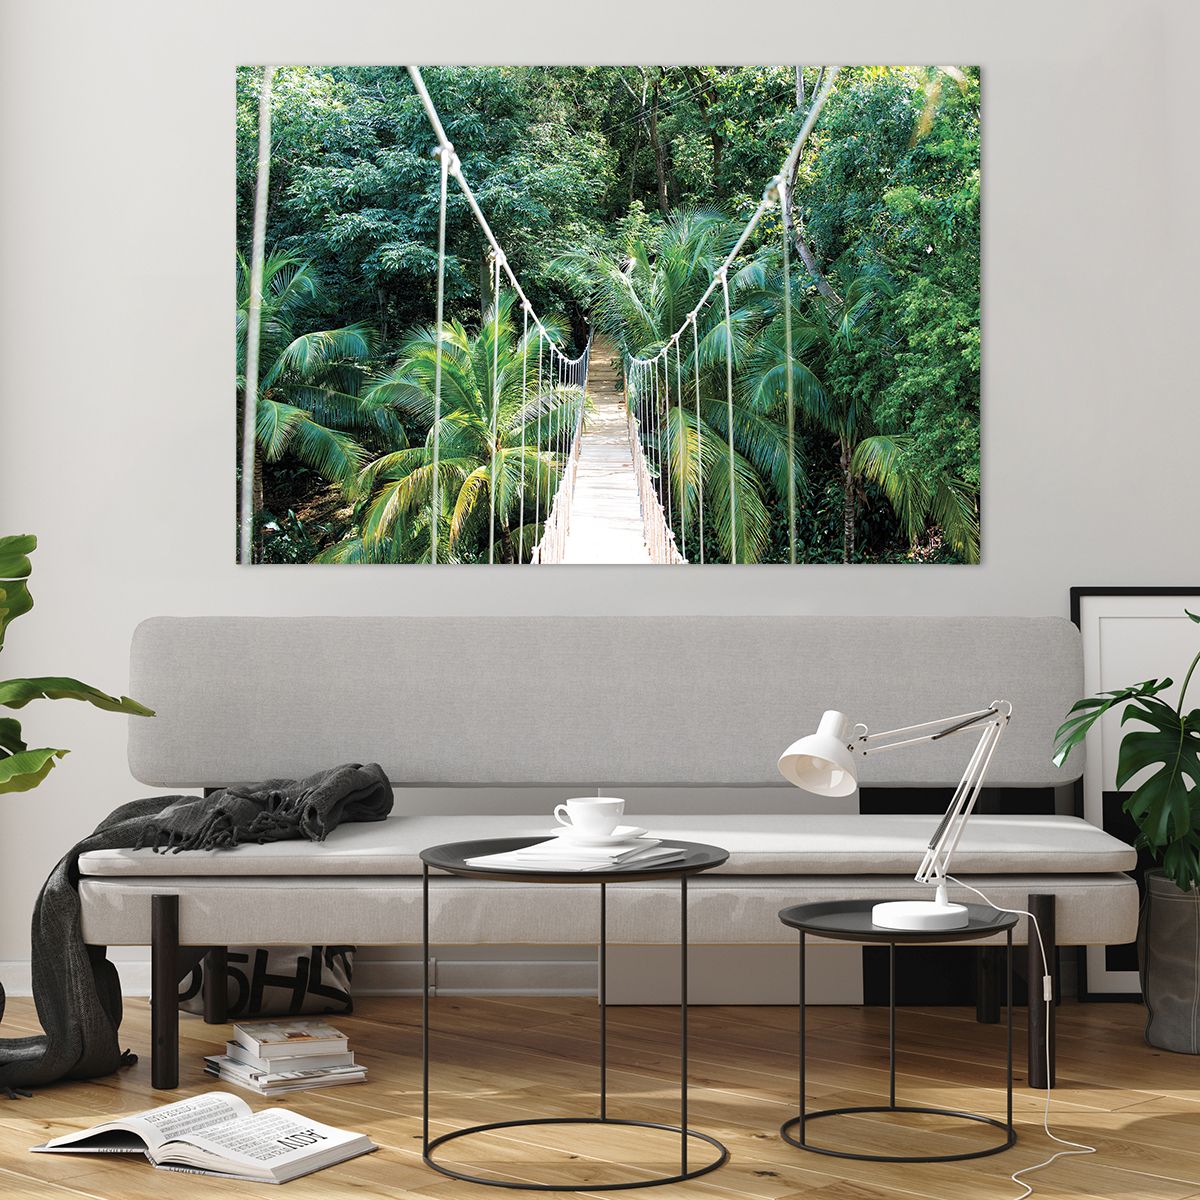 Üveg kép Tájkép, Üveg kép Dzsungel, Üveg kép Honduras, Üveg kép Függőhíd, Üveg kép Természet